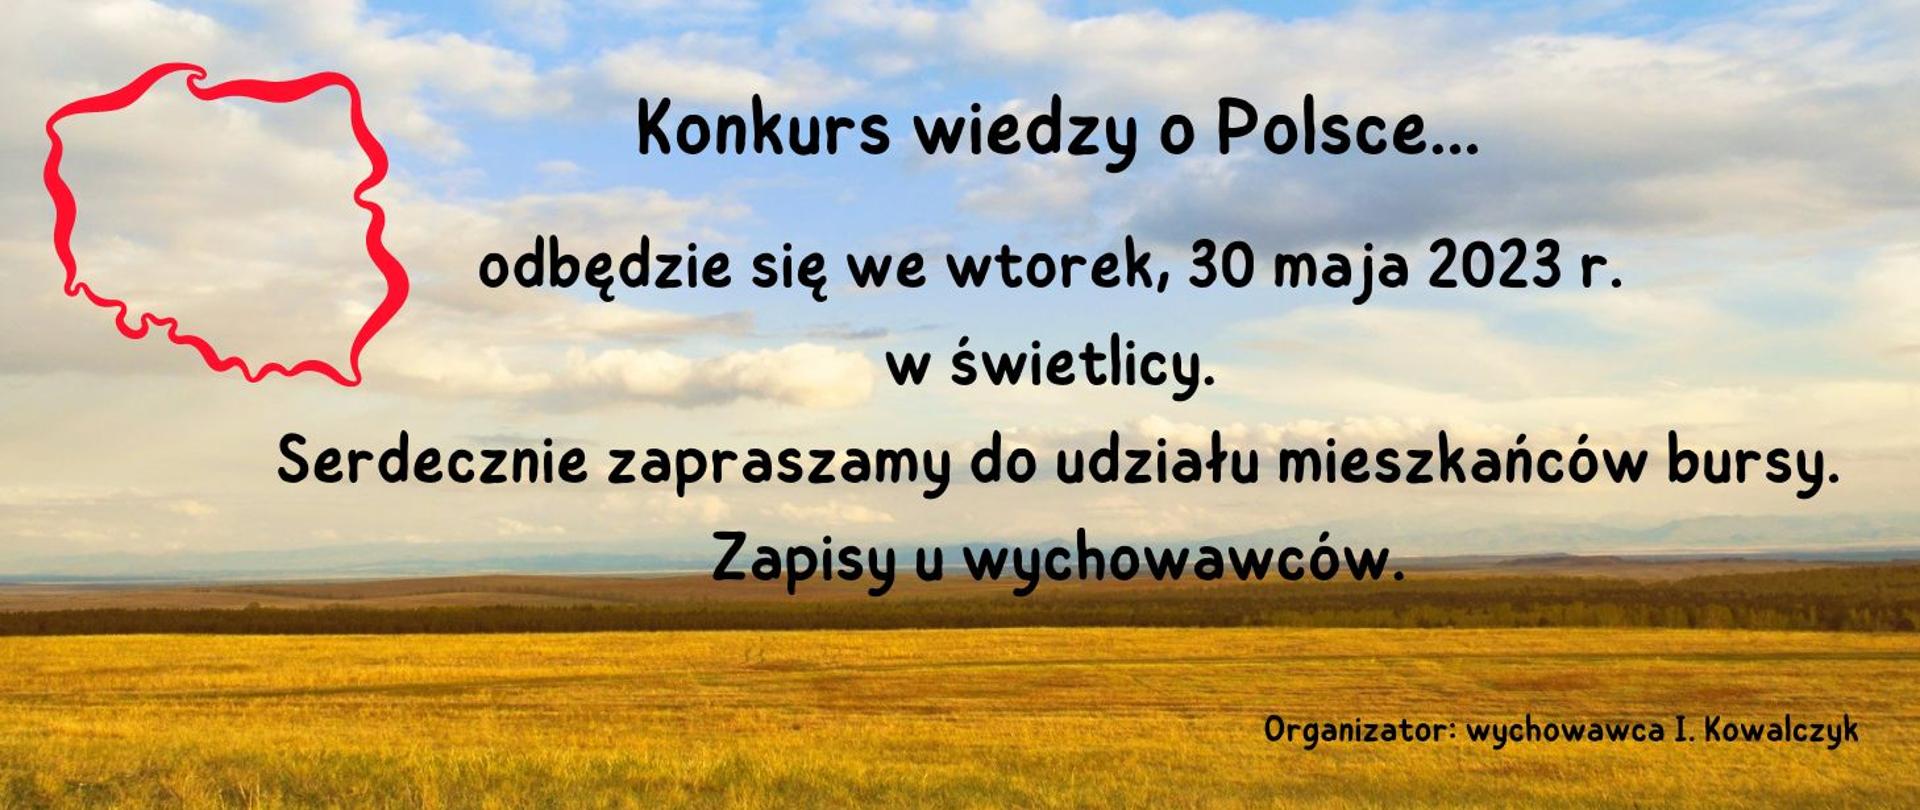 Plakat z informujący o konkursie wiedzy o Polsce